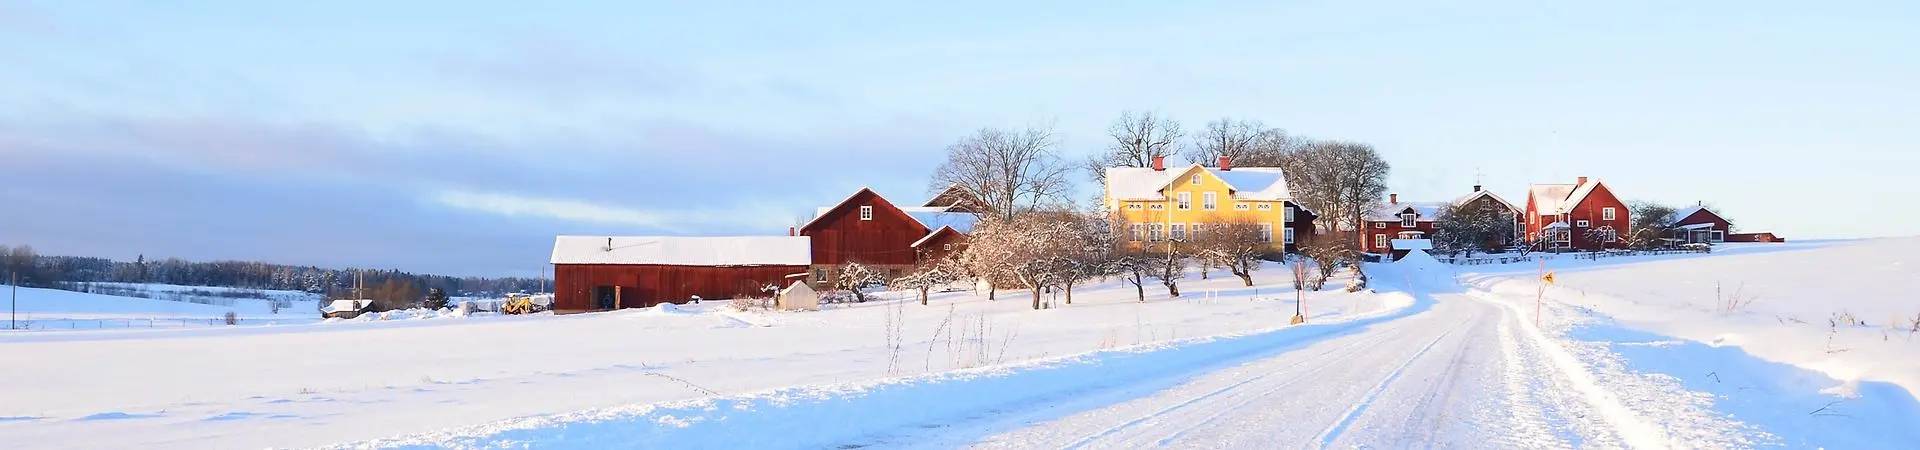 Vy över soligt och ljust vinterlandskap med gula och röda hus långt bort